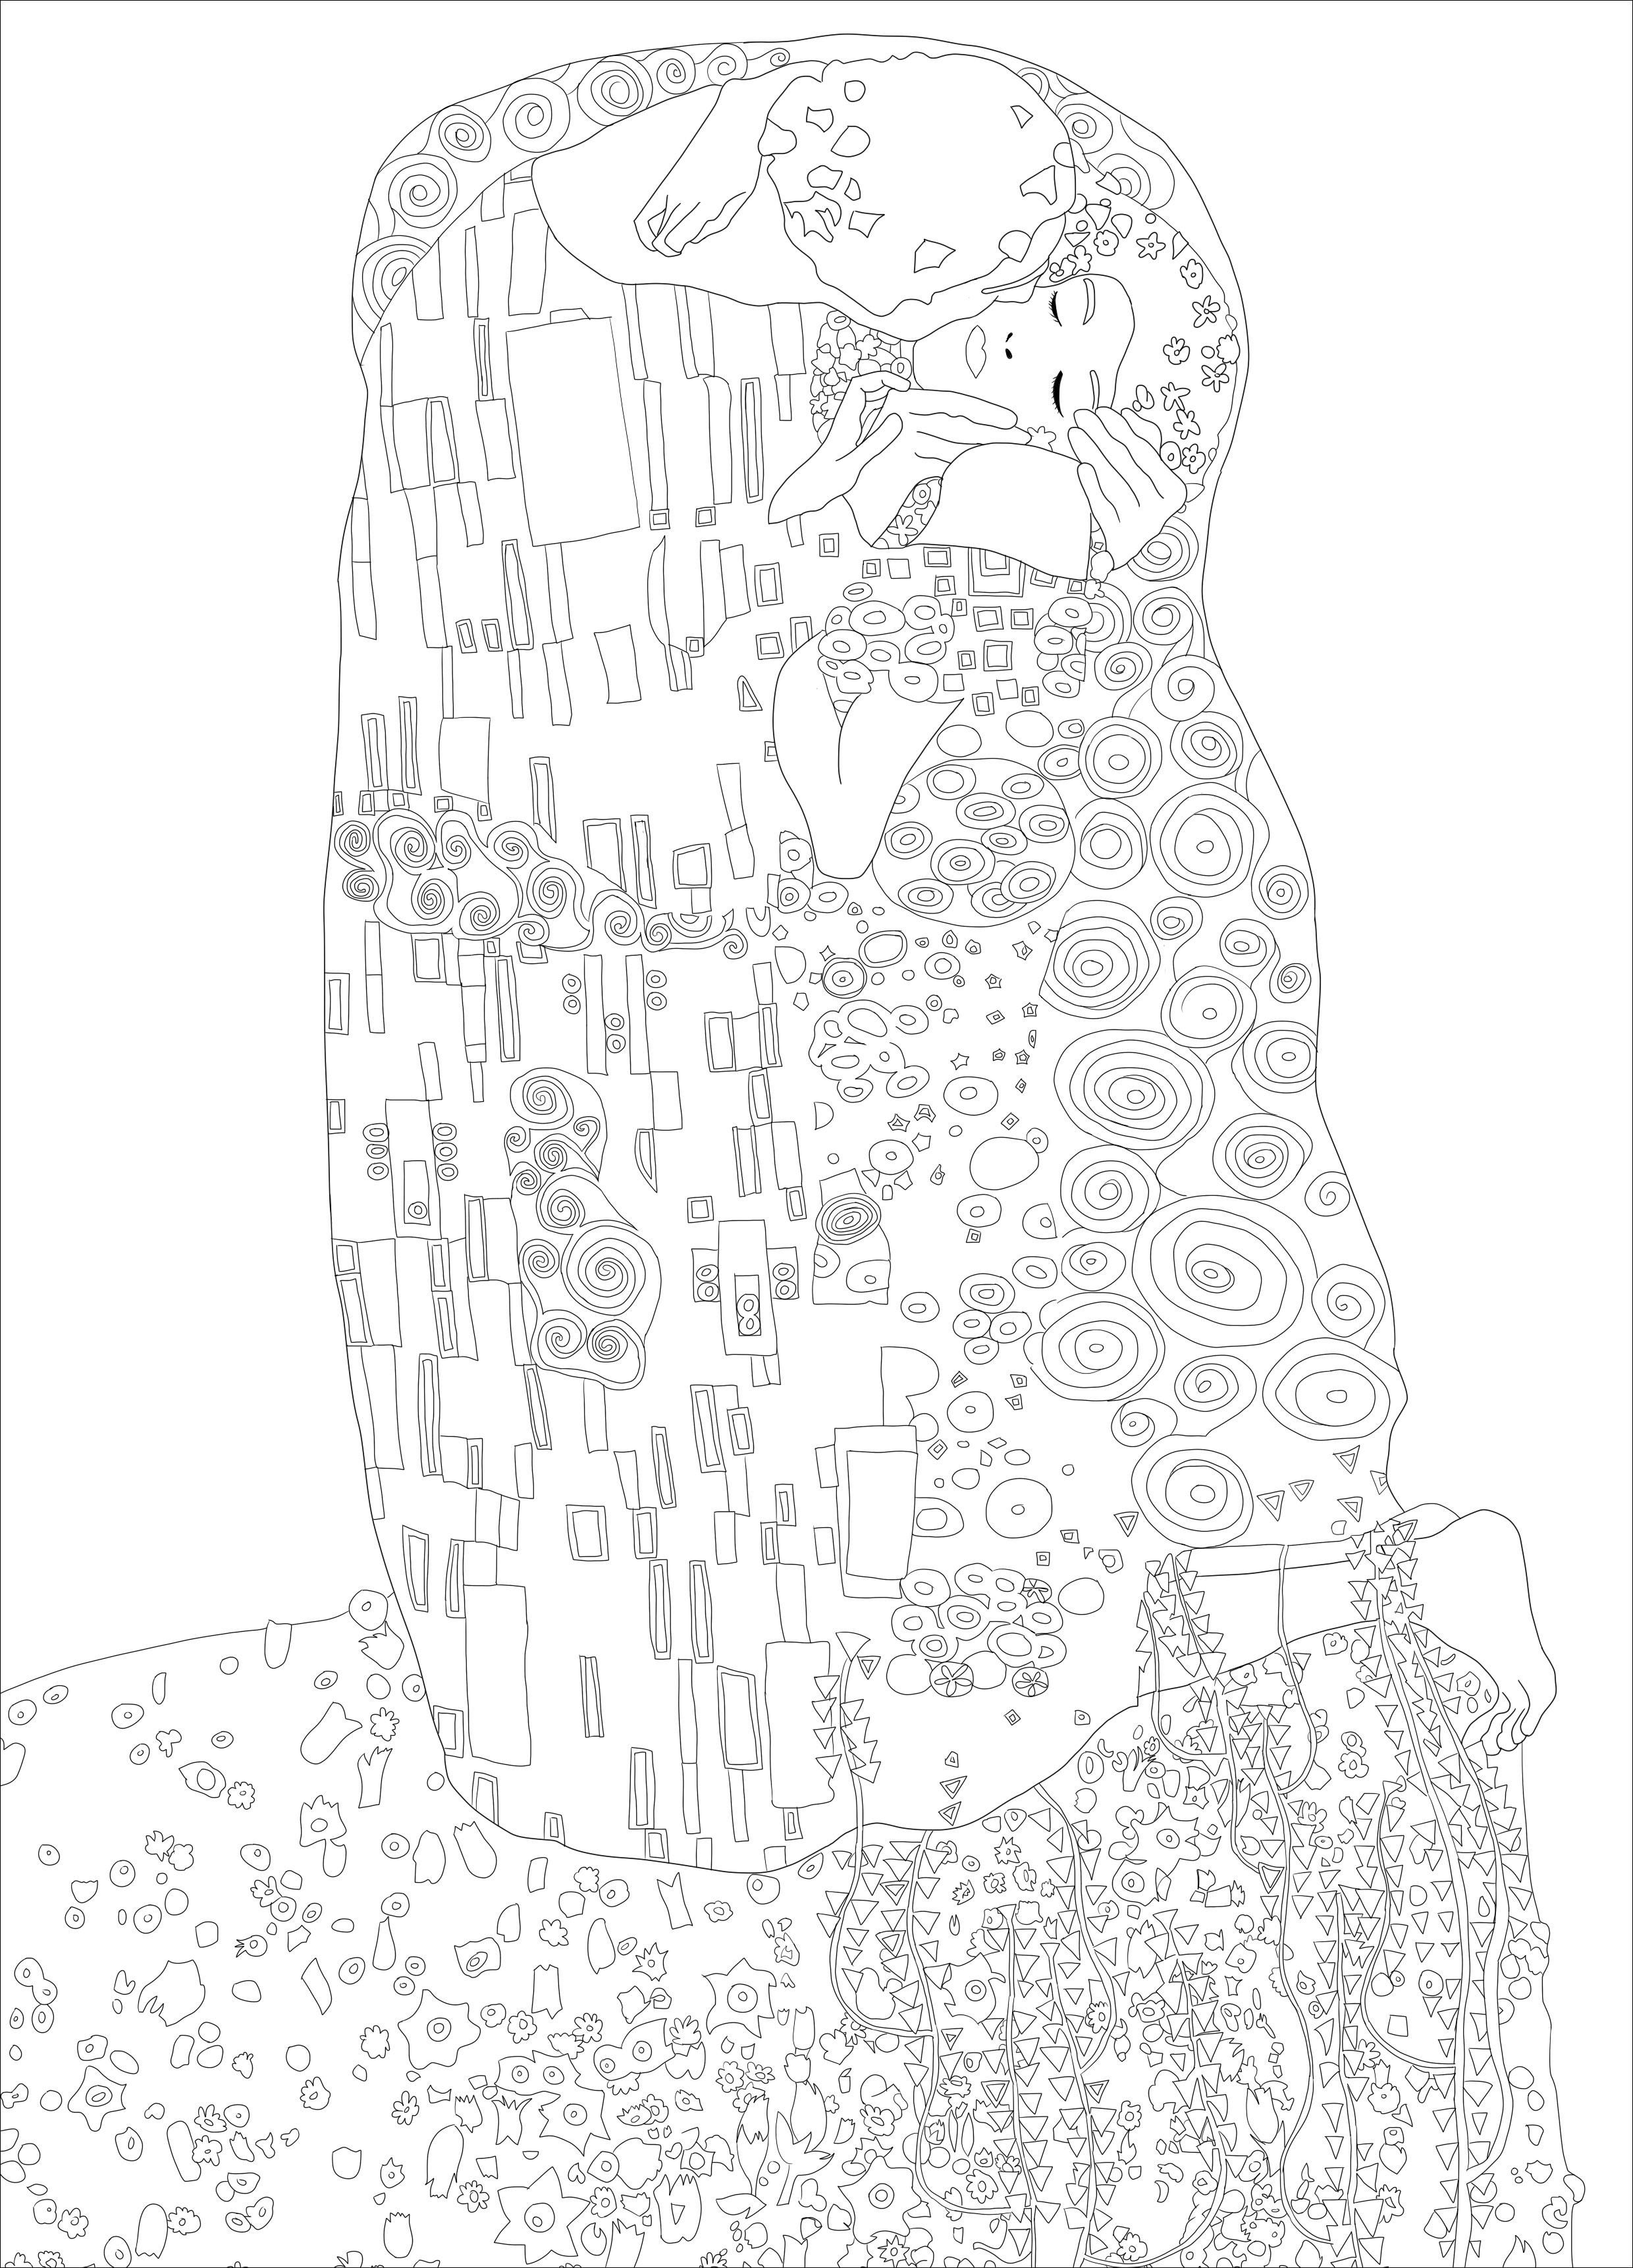 Malvorlage zum Gemälde 'Der Kuss' von Gustav Klimt. Das Gemälde gilt als ein Meisterwerk des Jugendstils und ist eines der populärsten Werke von Klimt. Derzeit befindet es sich in der Österreichischen Galerie Belvedere in Wien, Österreich. Das Gemälde ist bekannt für seinen sinnlichen und erotischen Charakter sowie für die Verwendung von Blattgold und anderen dekorativen Elementen in der Komposition, Künstler : Ji. M